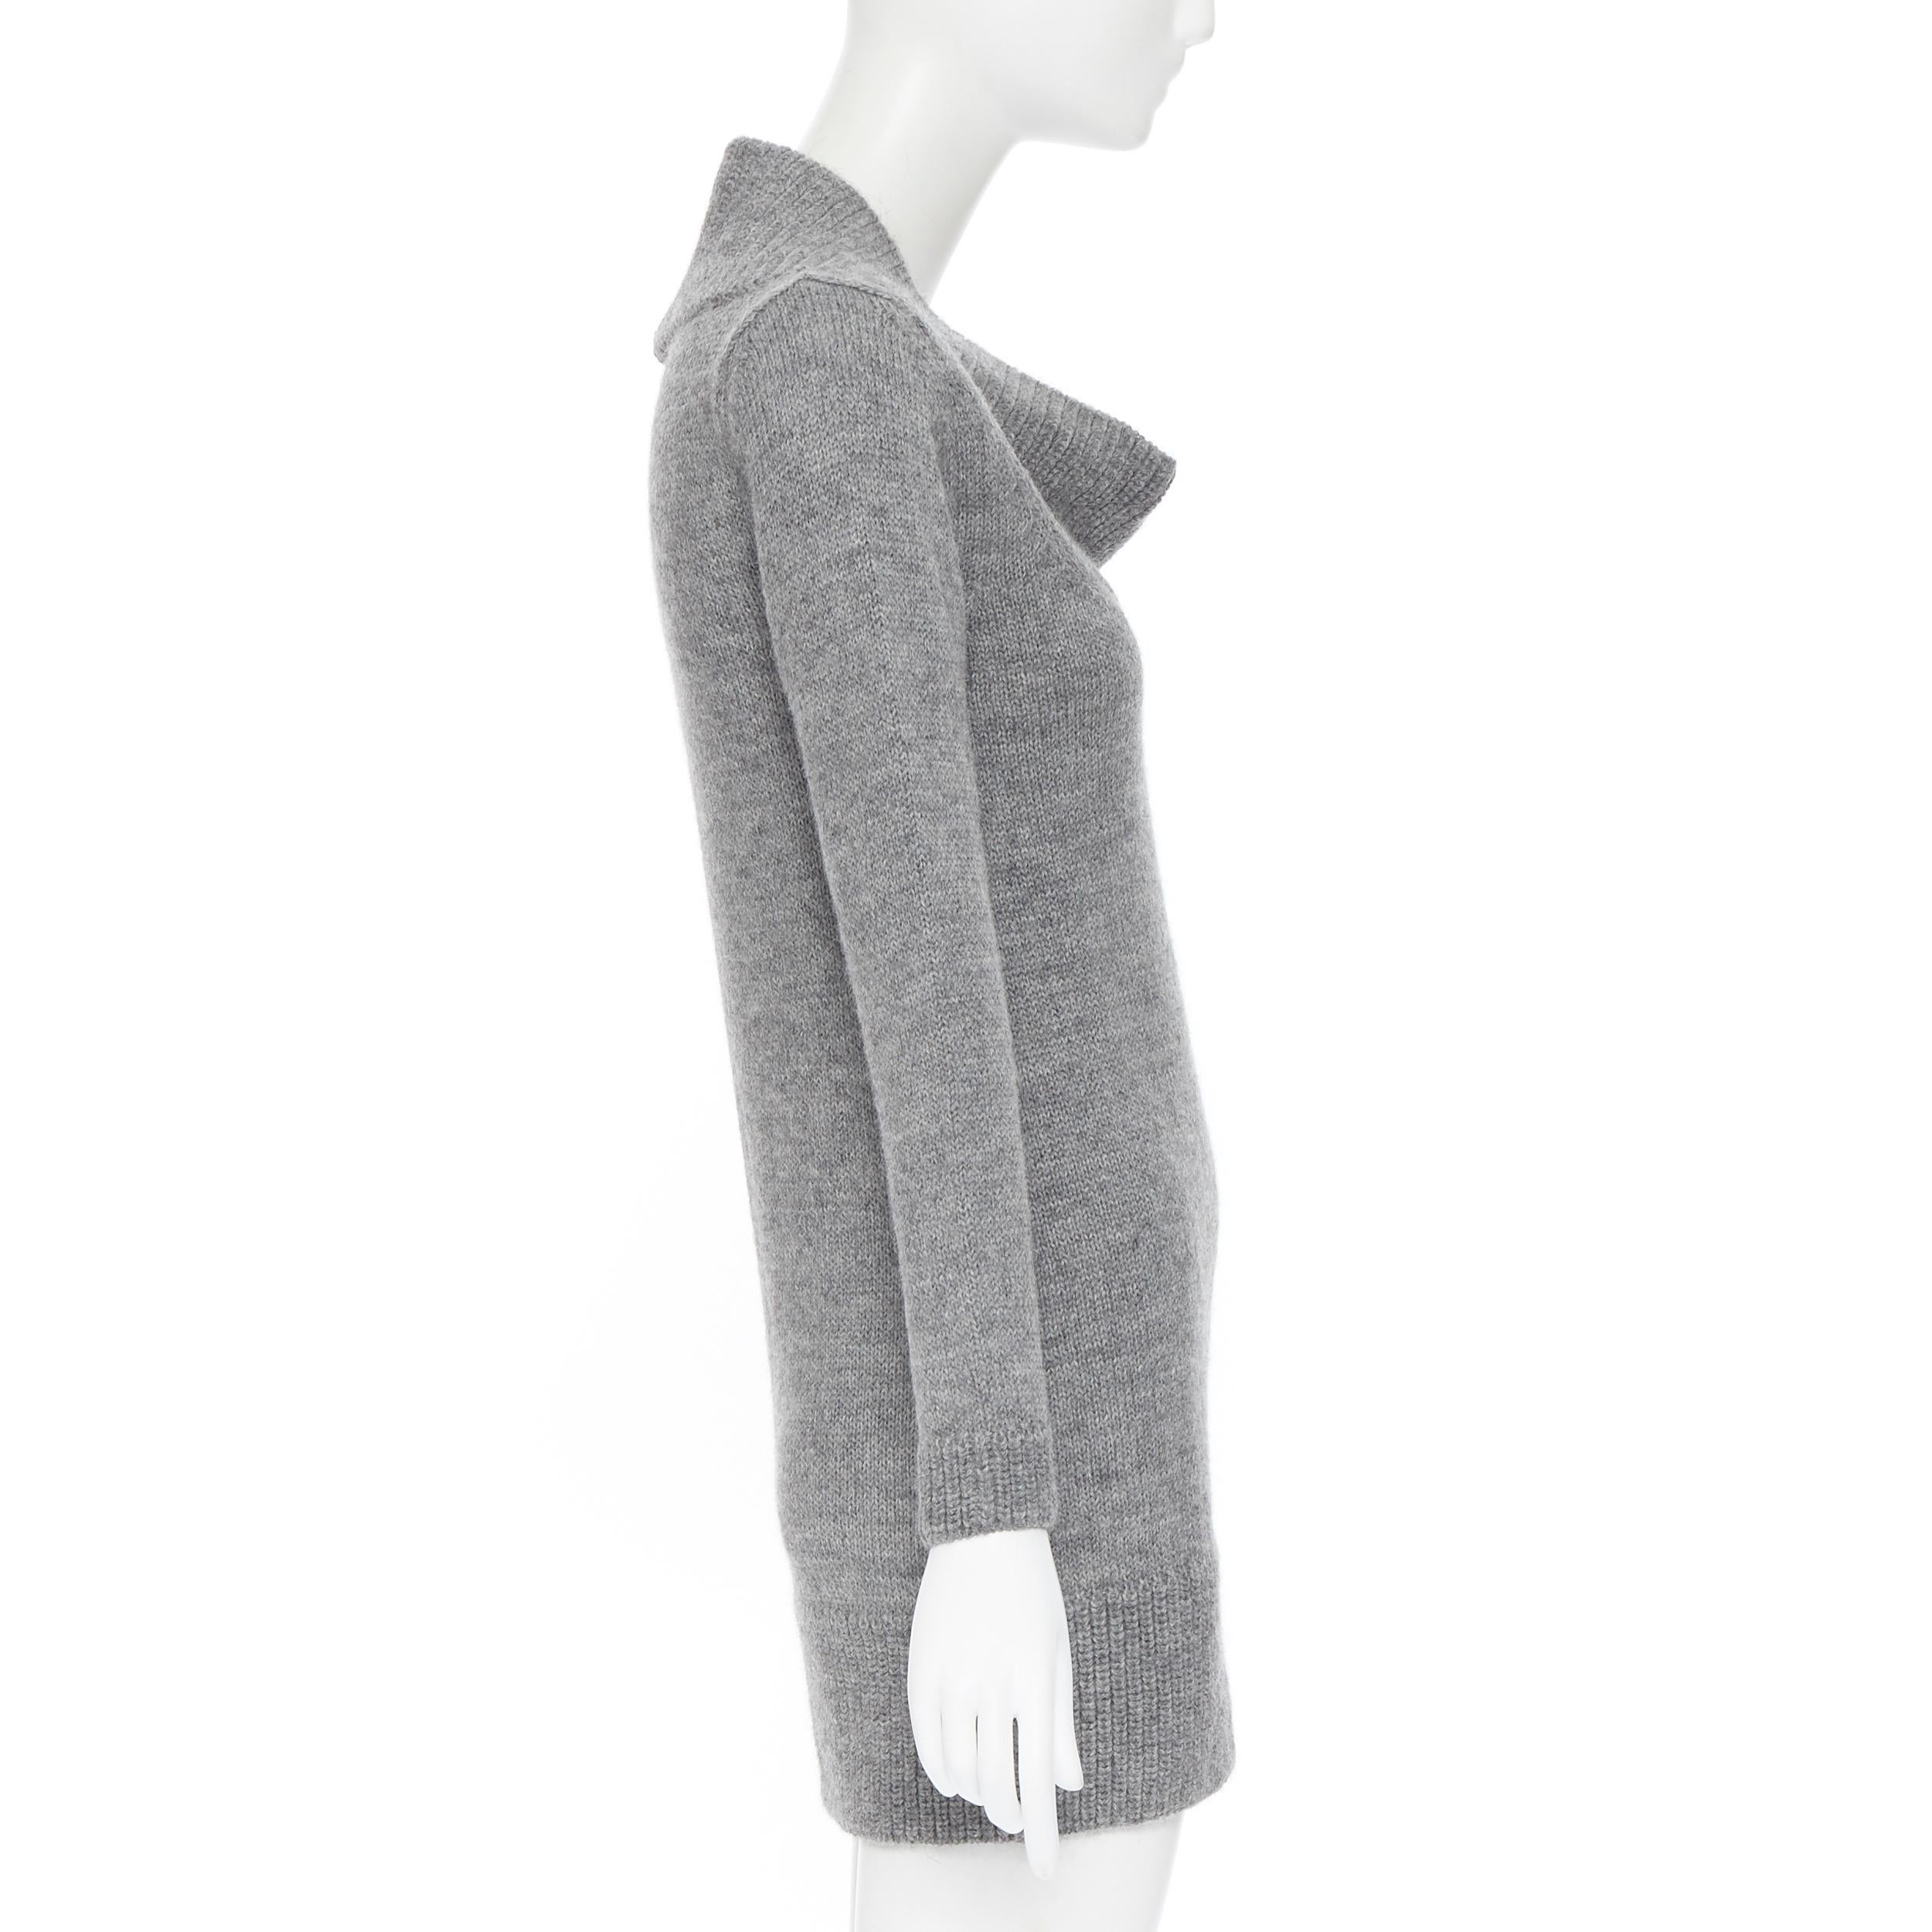 Women's CHLOE alpaca wool grey open cowl neck long sleeve sweater dress XS